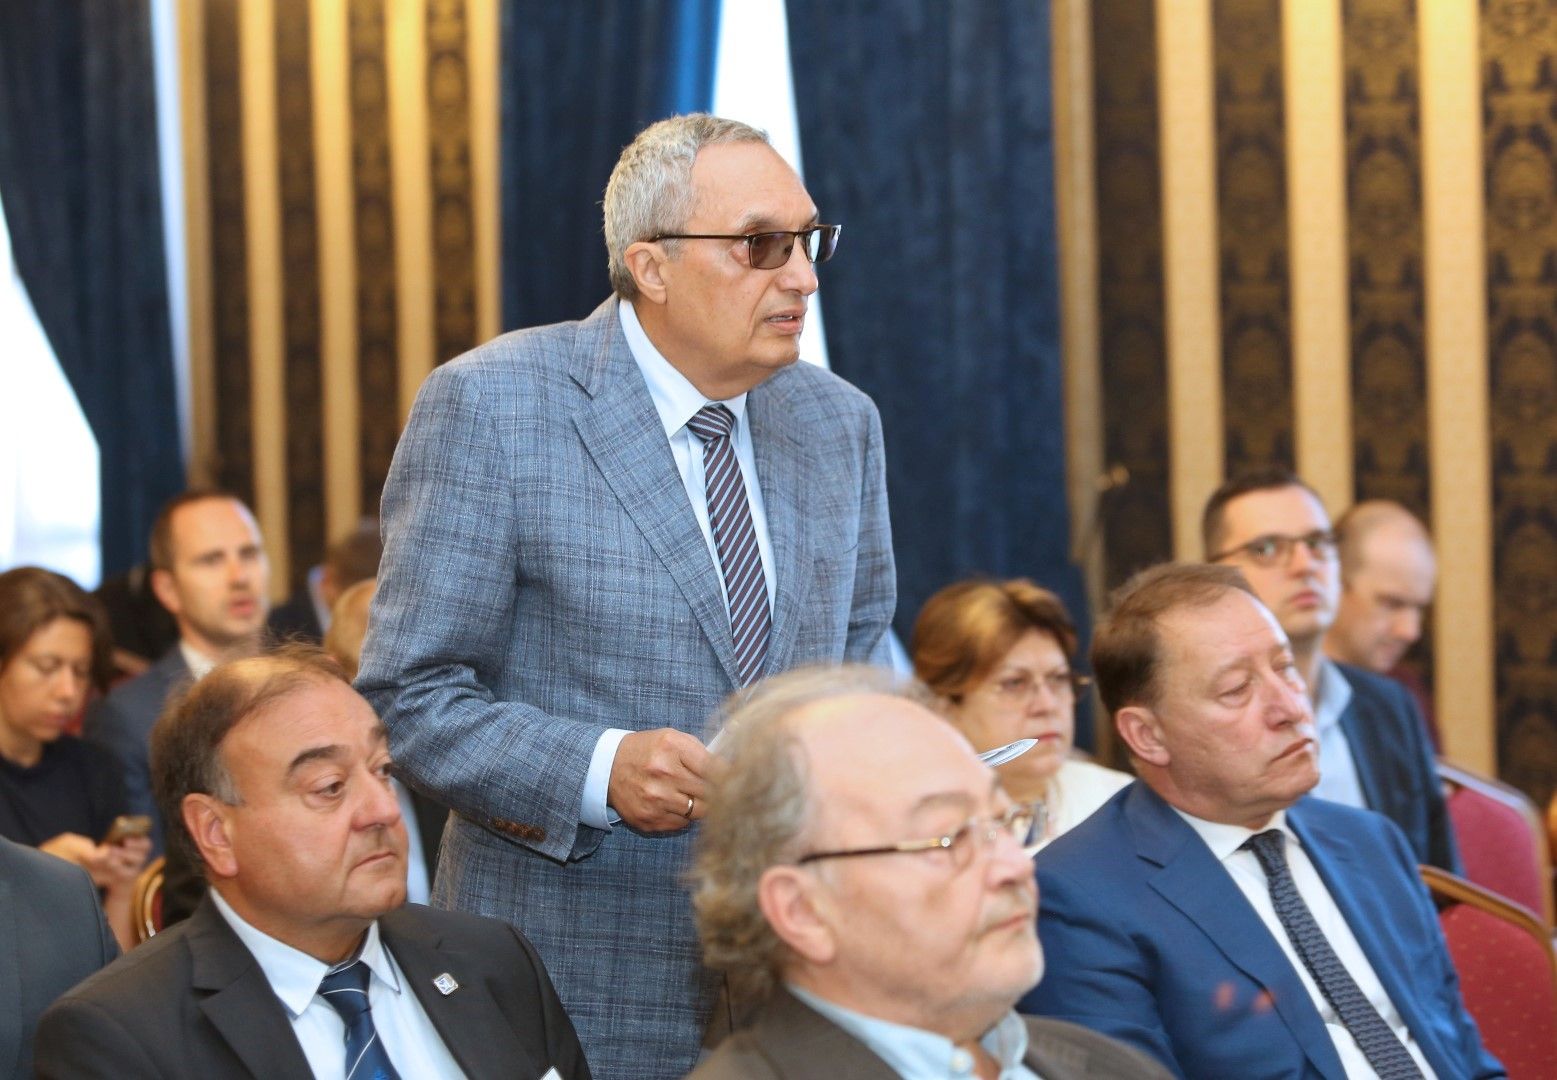 Във форума осван Костов участва и бившият военен министър Ангел Найденов (вдясно))